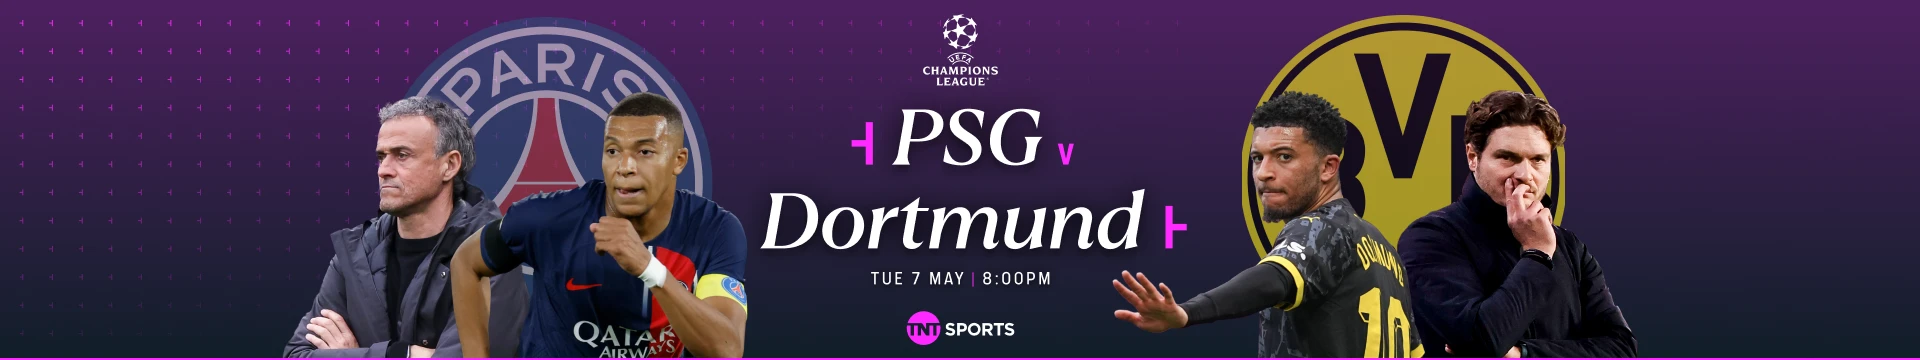 PSG v Dortmund Tuesday 7 May at 8pm